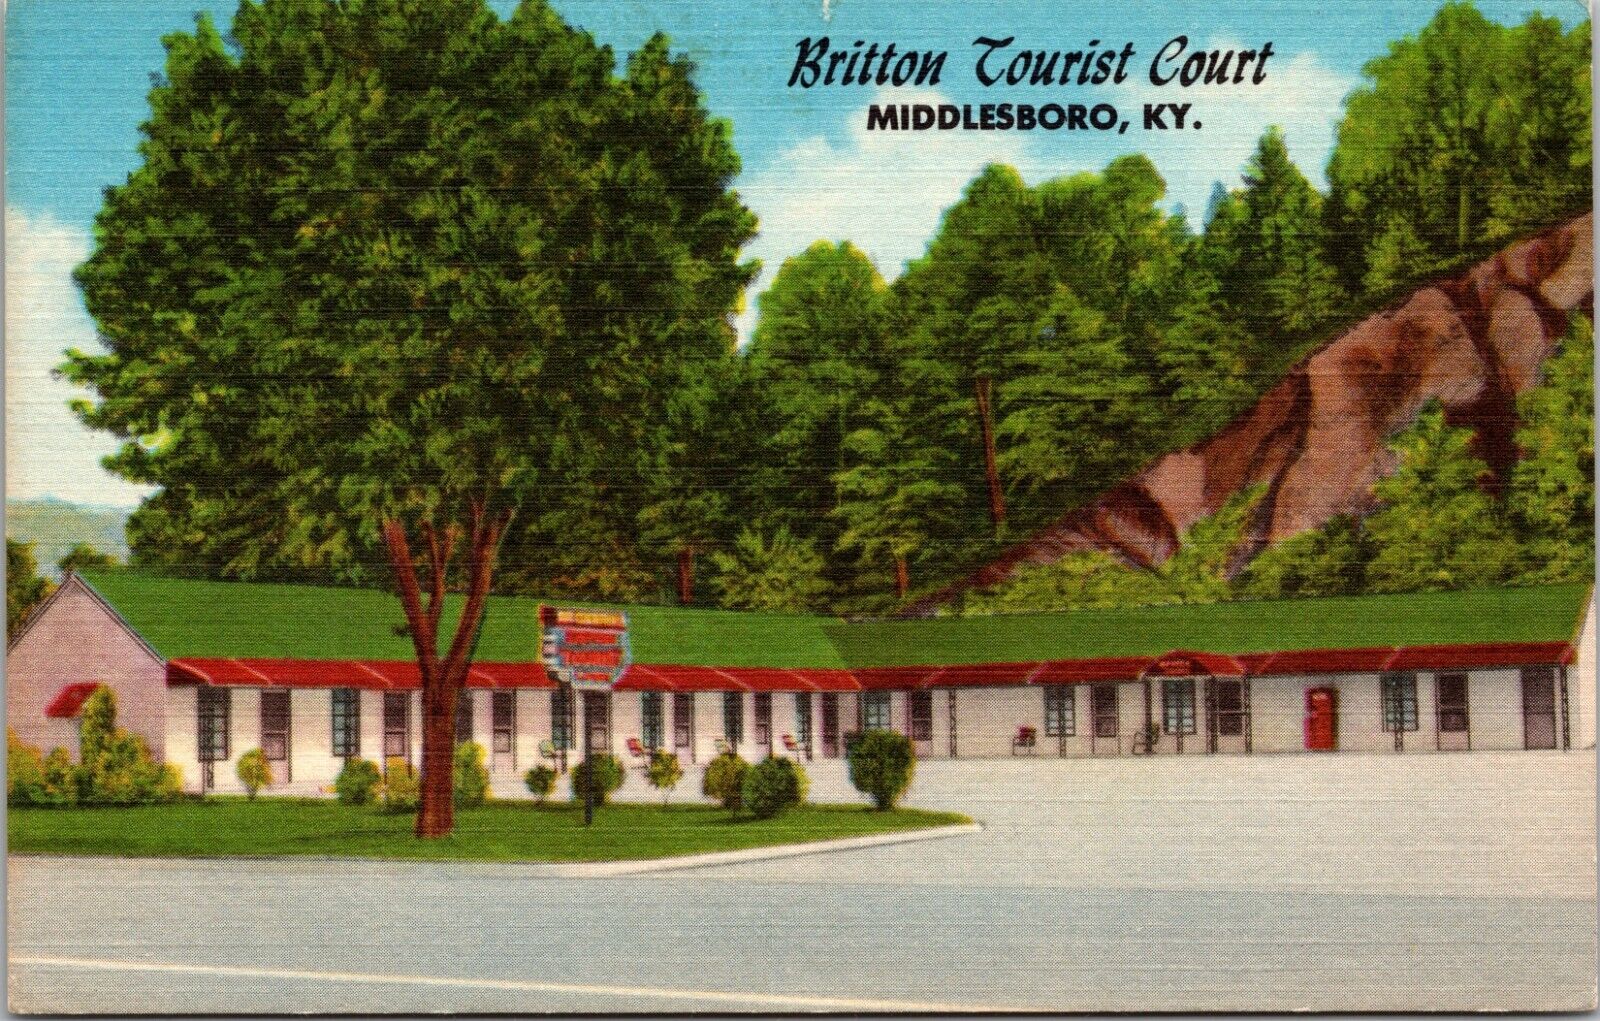 Britton Tourist Court Middlesboro KENTUCKY LINEN POSTCARD B8